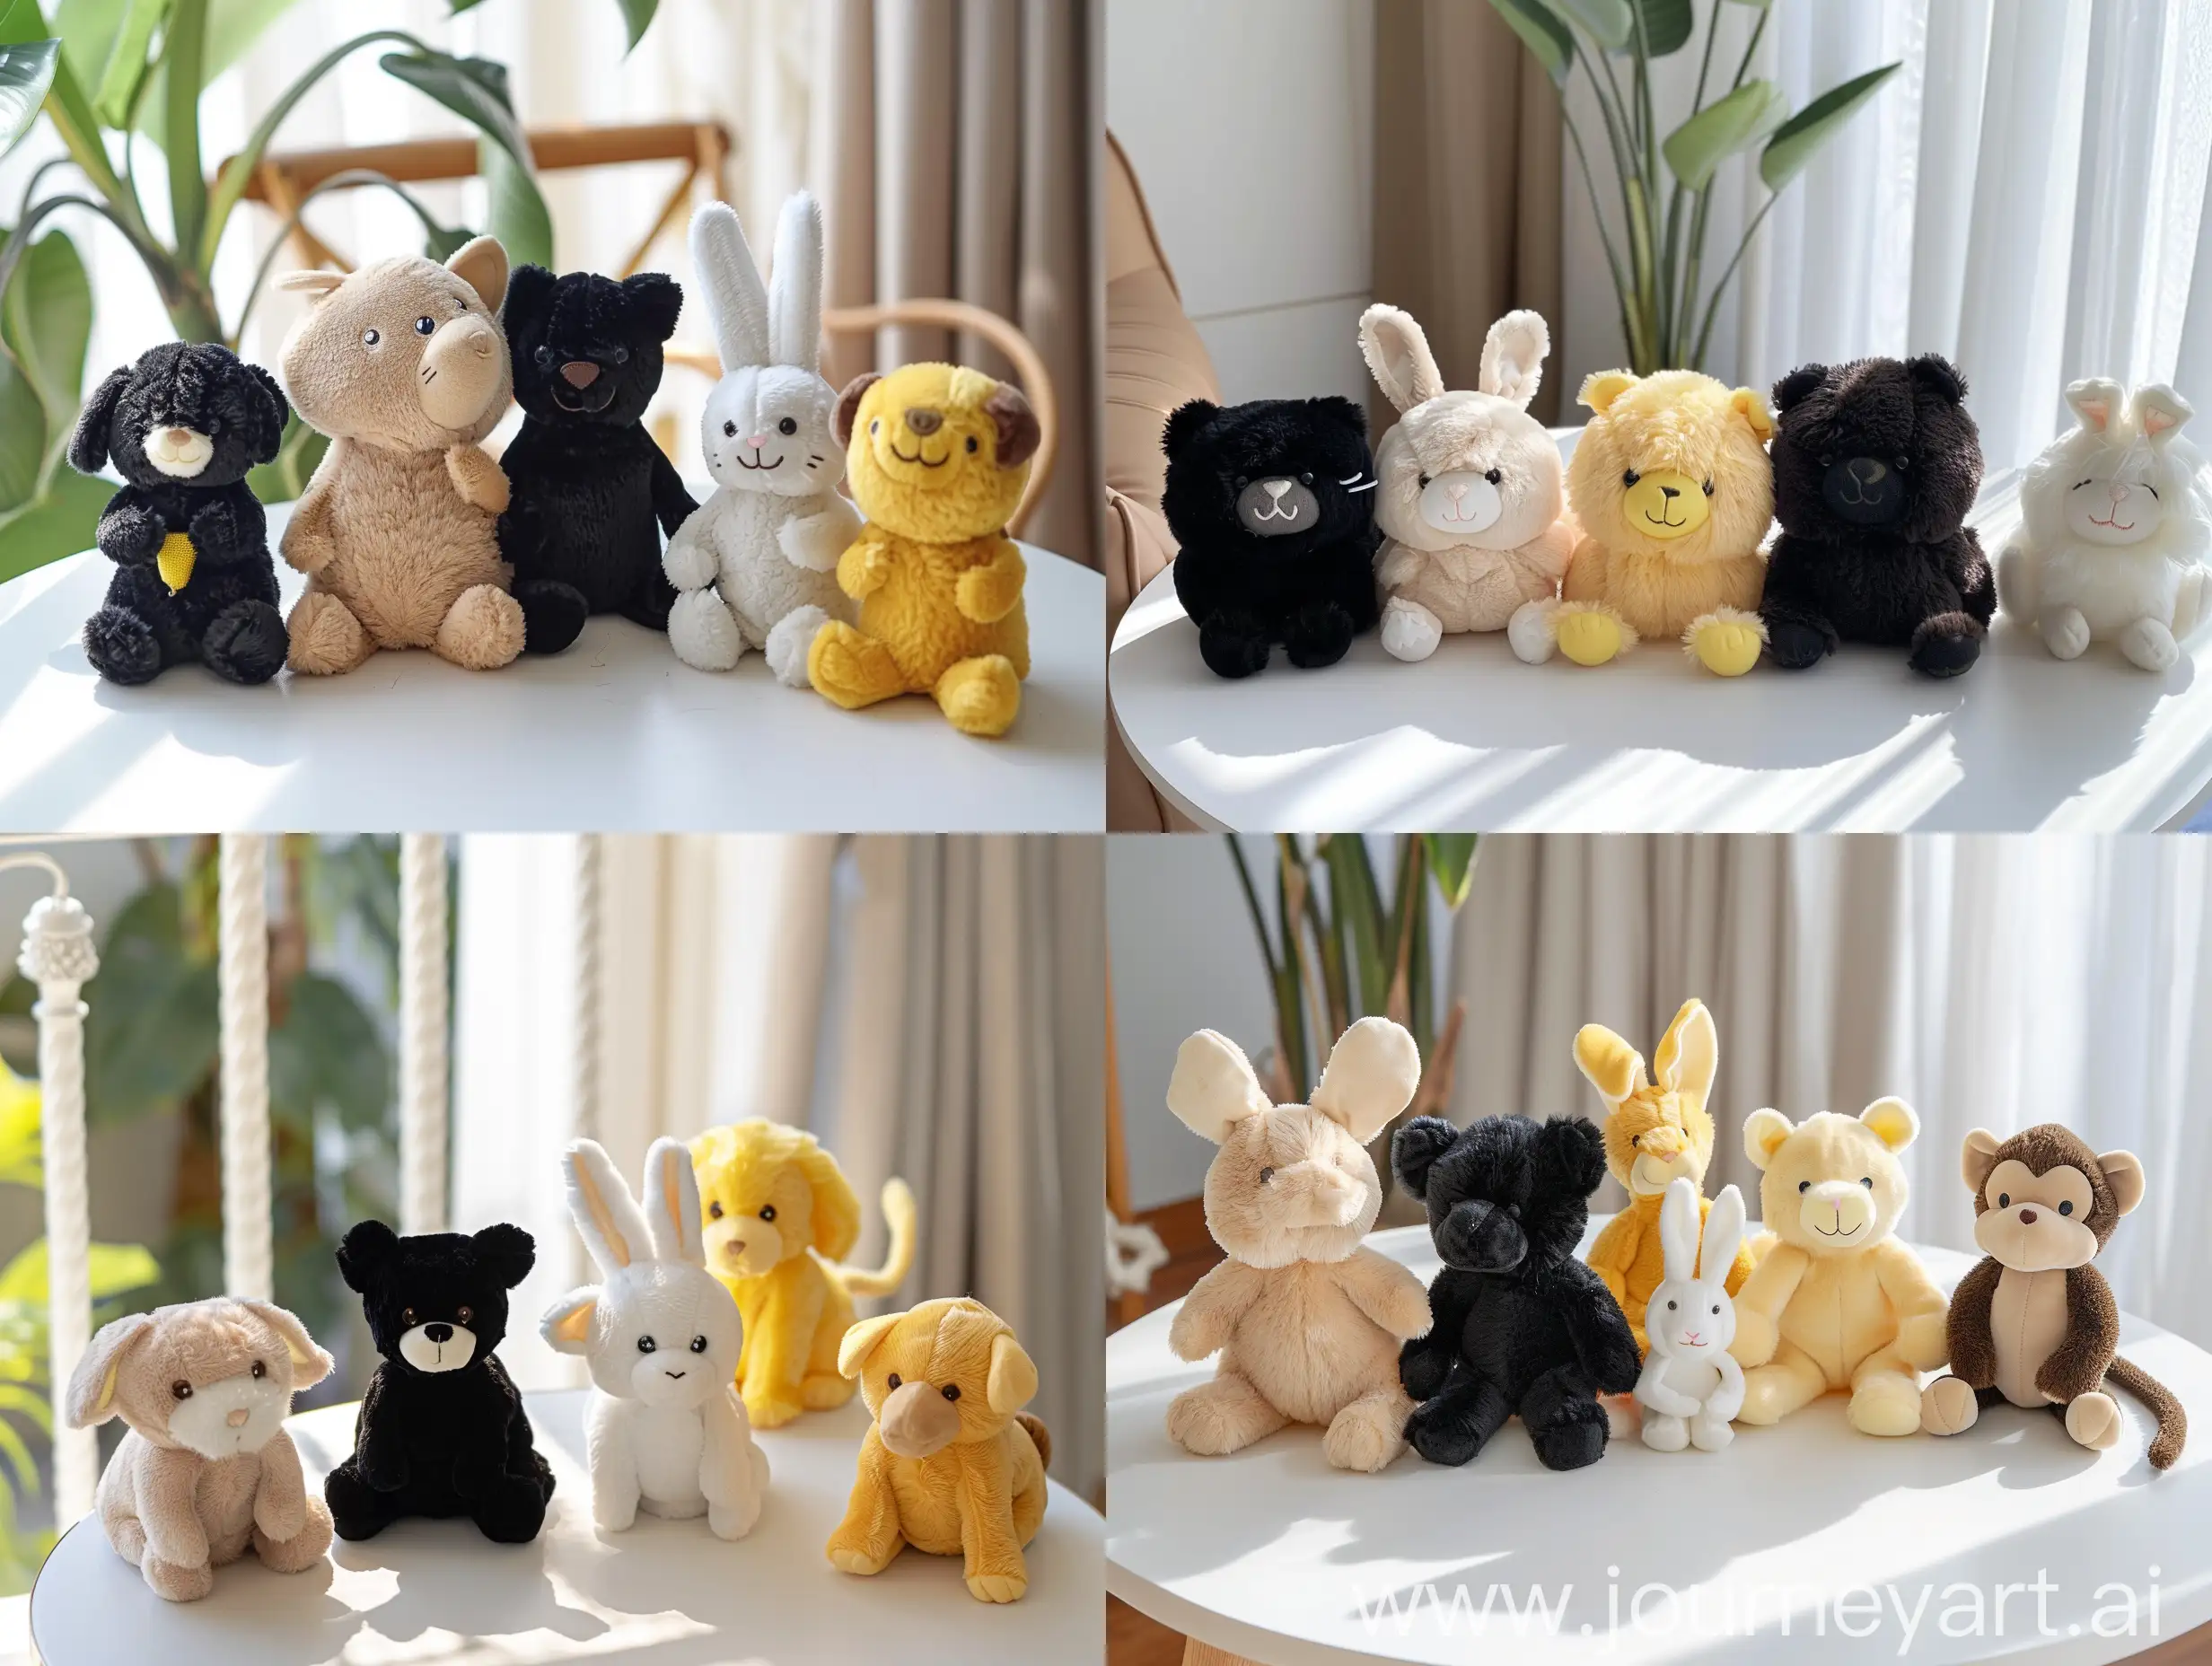 5 плюшевых игрушек в виде животных на белом столе.   1. бежевый хомяк 2. черная кошка 3. жёлтая собака 4. белый кролик 5. коричневая обезьяна  чиби, плюшевые.